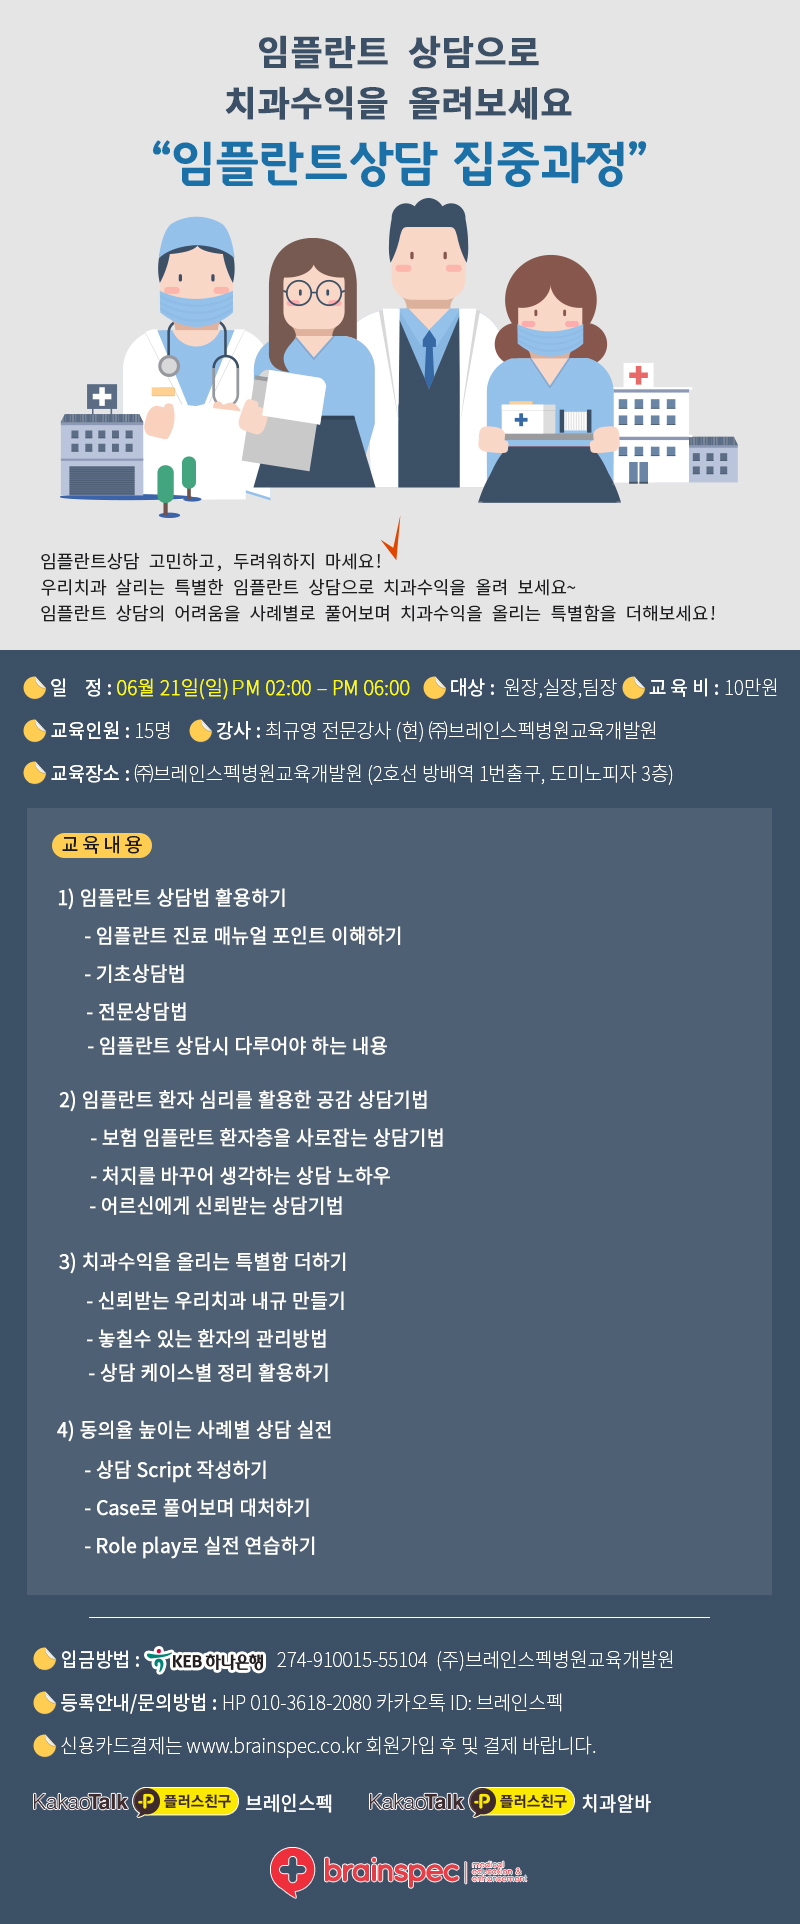 2020-6-21 임플란트상담 집중과정_최규영.jpg